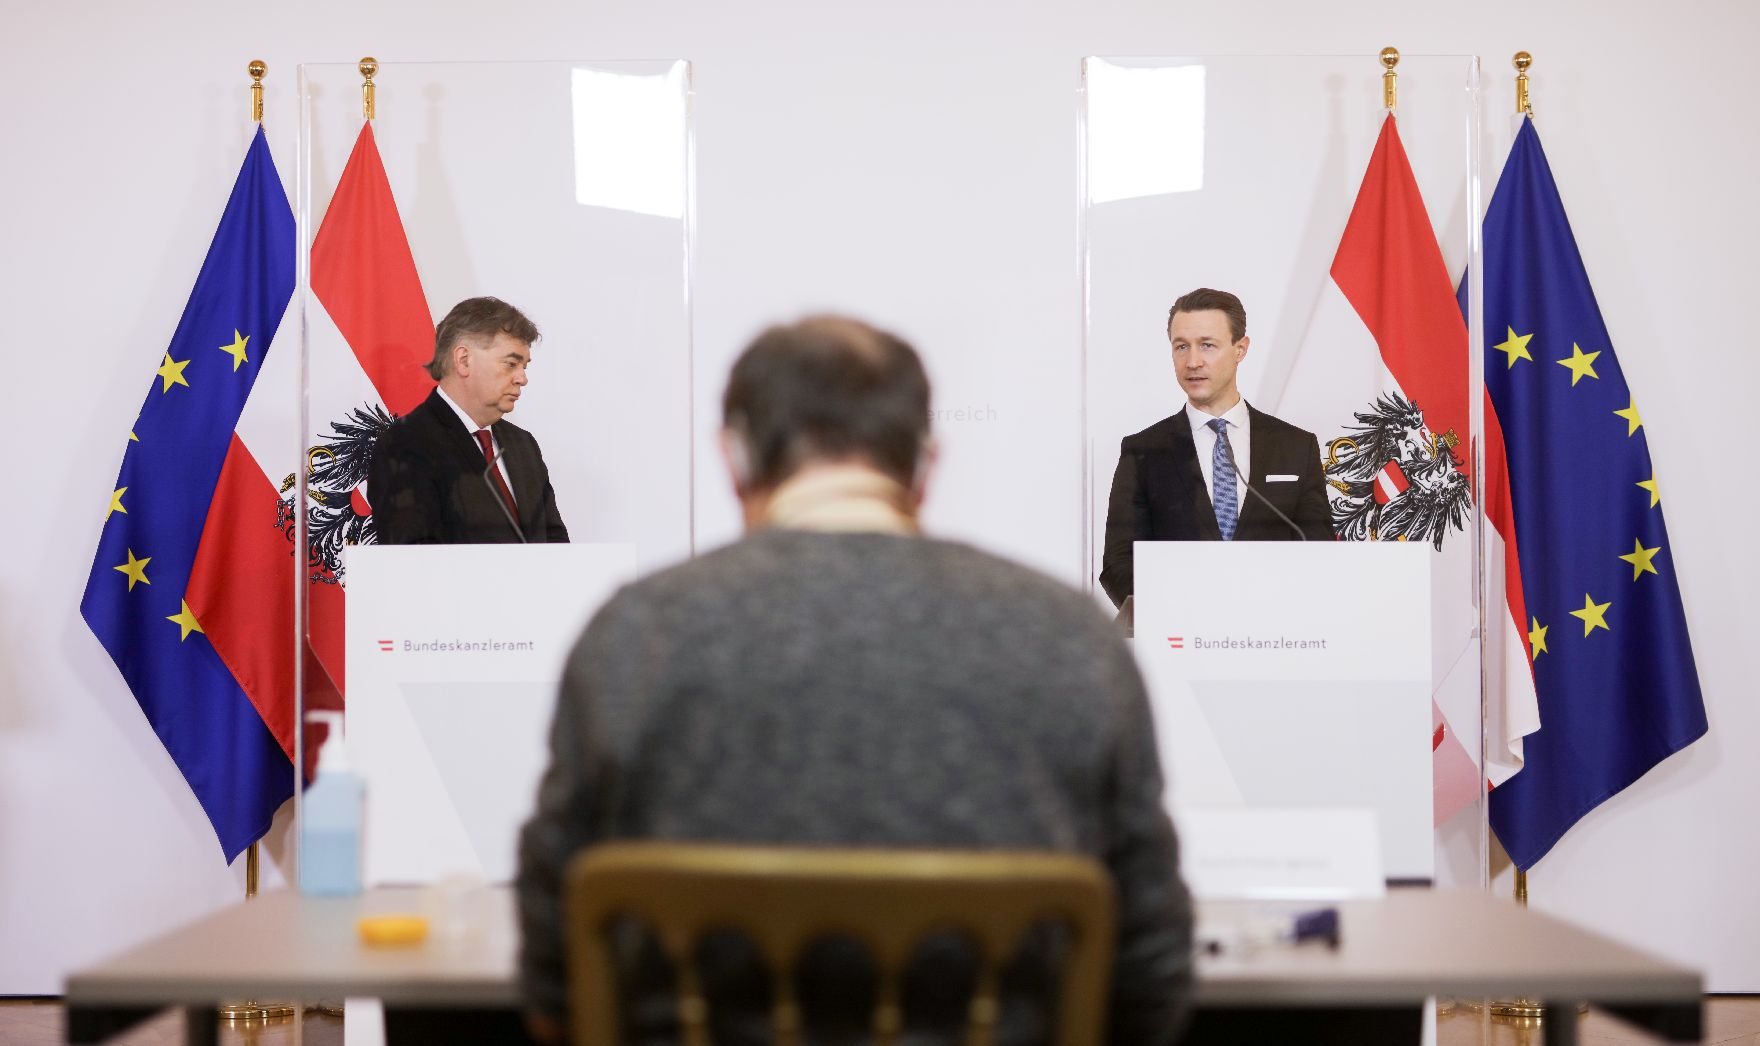 Am 7. Mai 2020 fand ein Pressestatement zu den Maßnahmen gegen die Krise im Bundeskanzleramt statt. Im Bild Vizekanzler Werner Kogler (l.) und Finanzminister Gernot Blümel (r.).